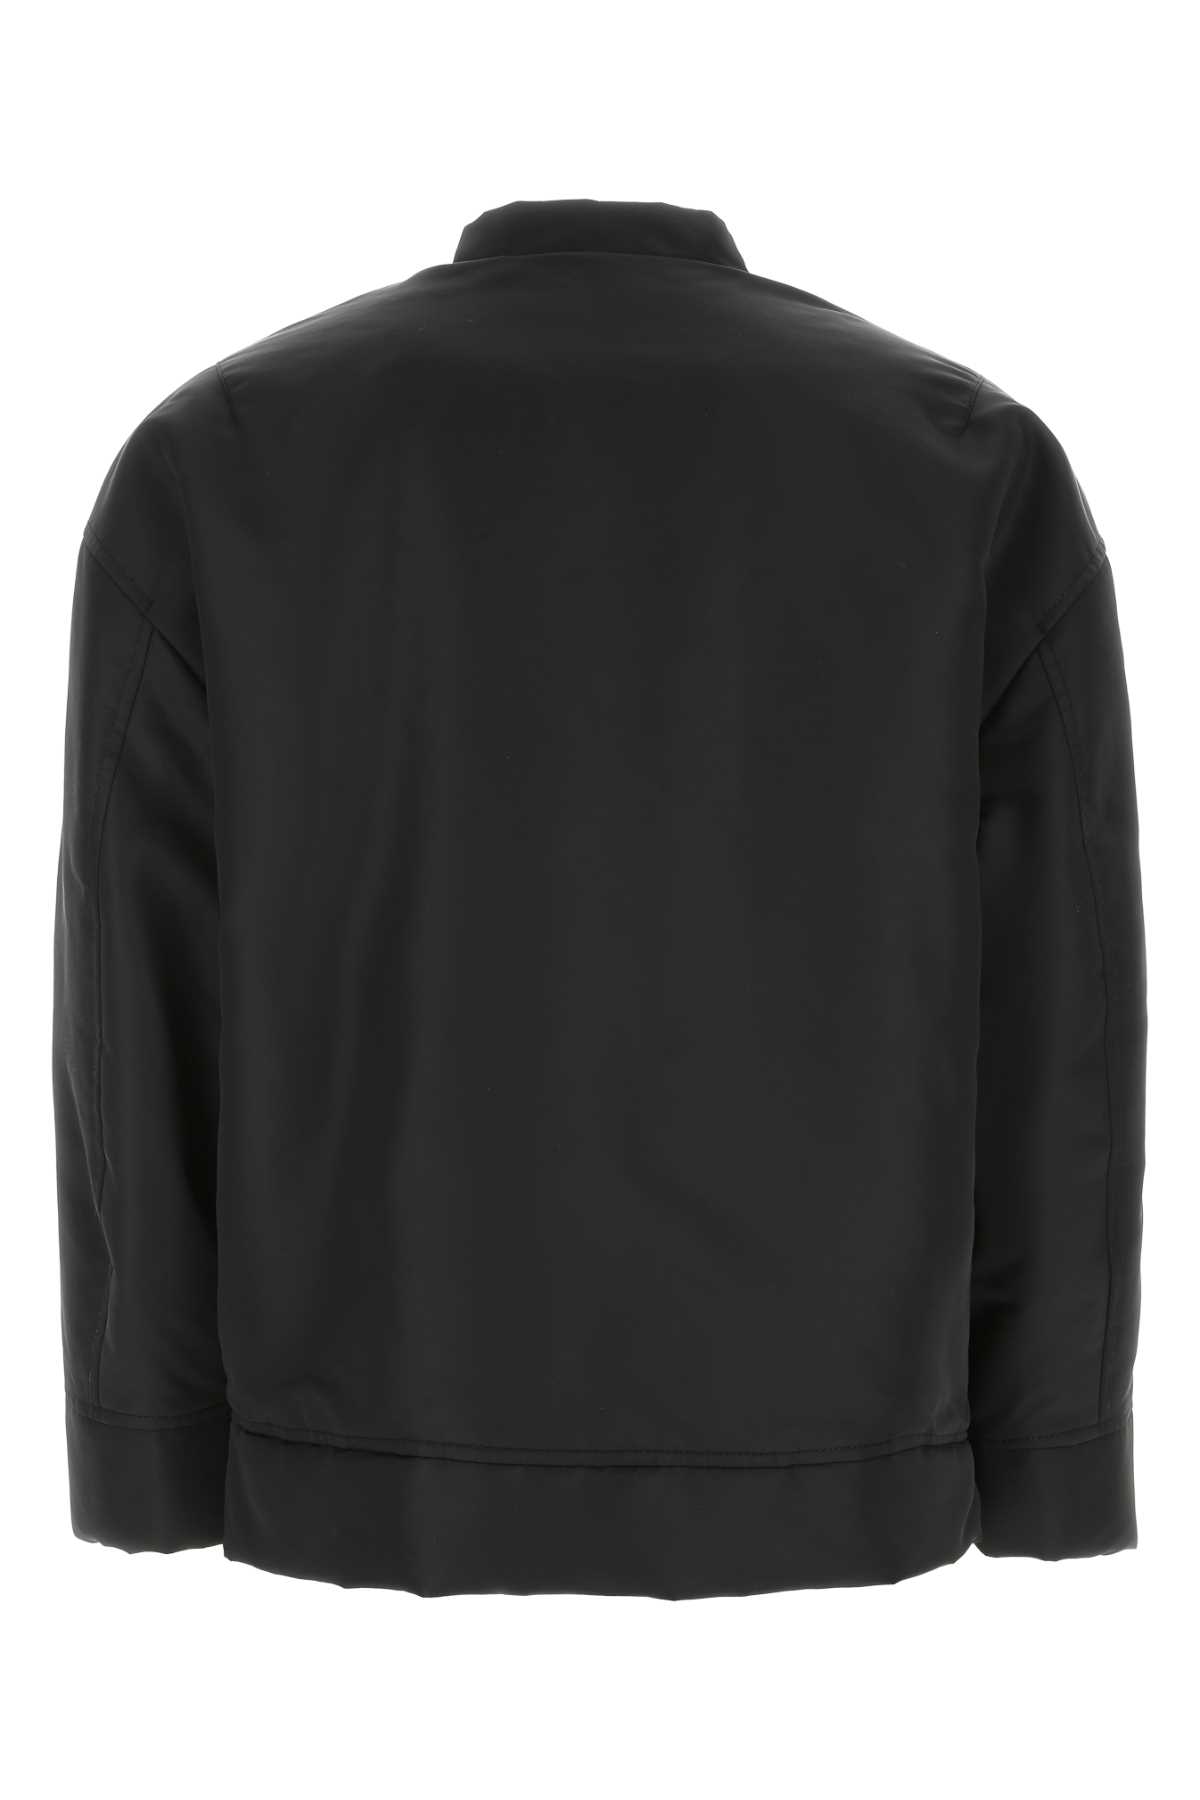 Valentino Black Nylon Jacket In 0no